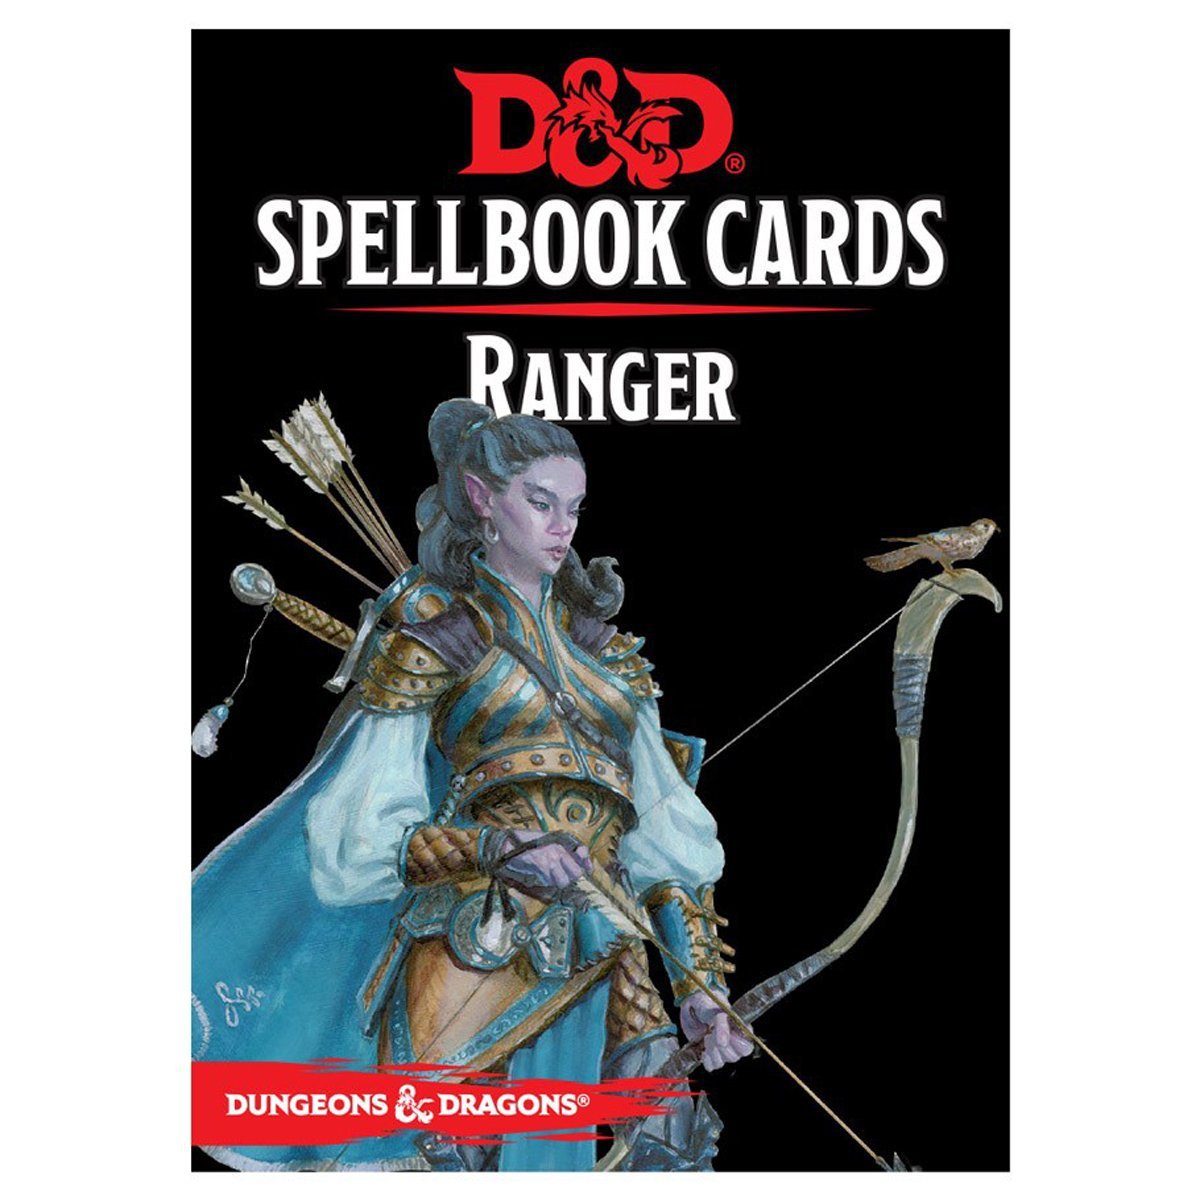 Spellbook Cards: Ranger